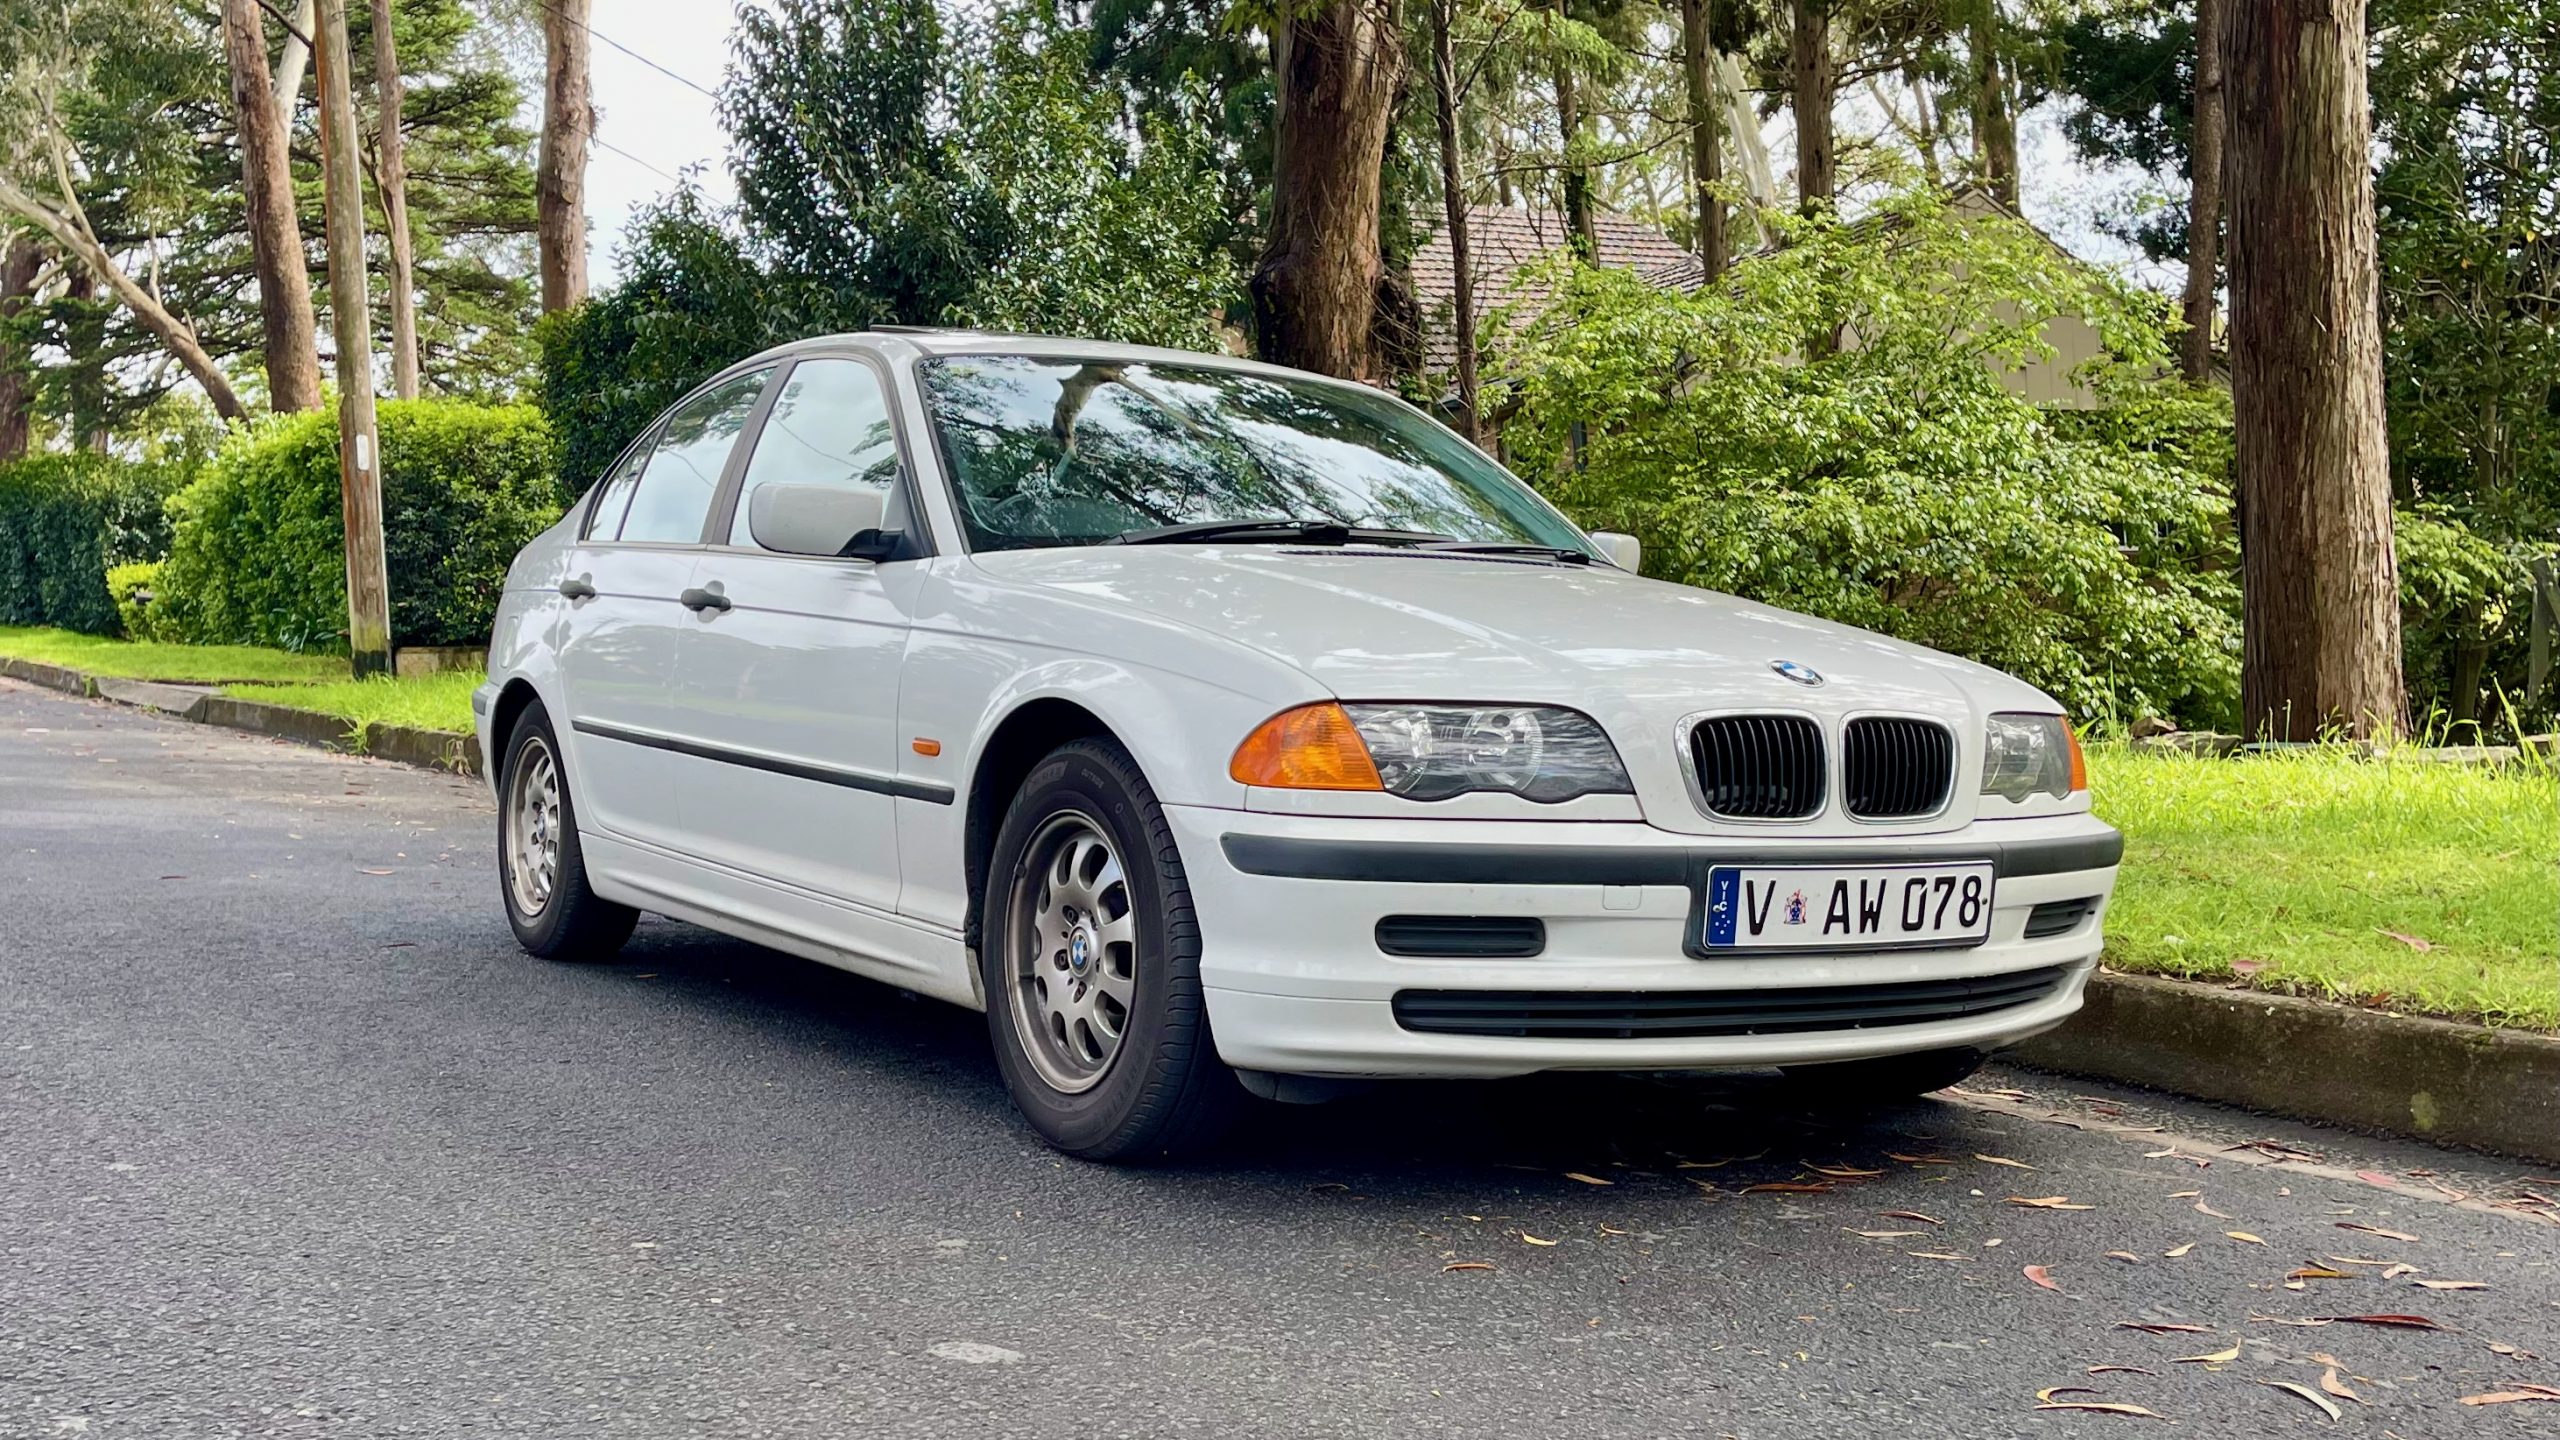 1999 BMW 318i E46 Sedan Used Car Review | DiscoverAuto